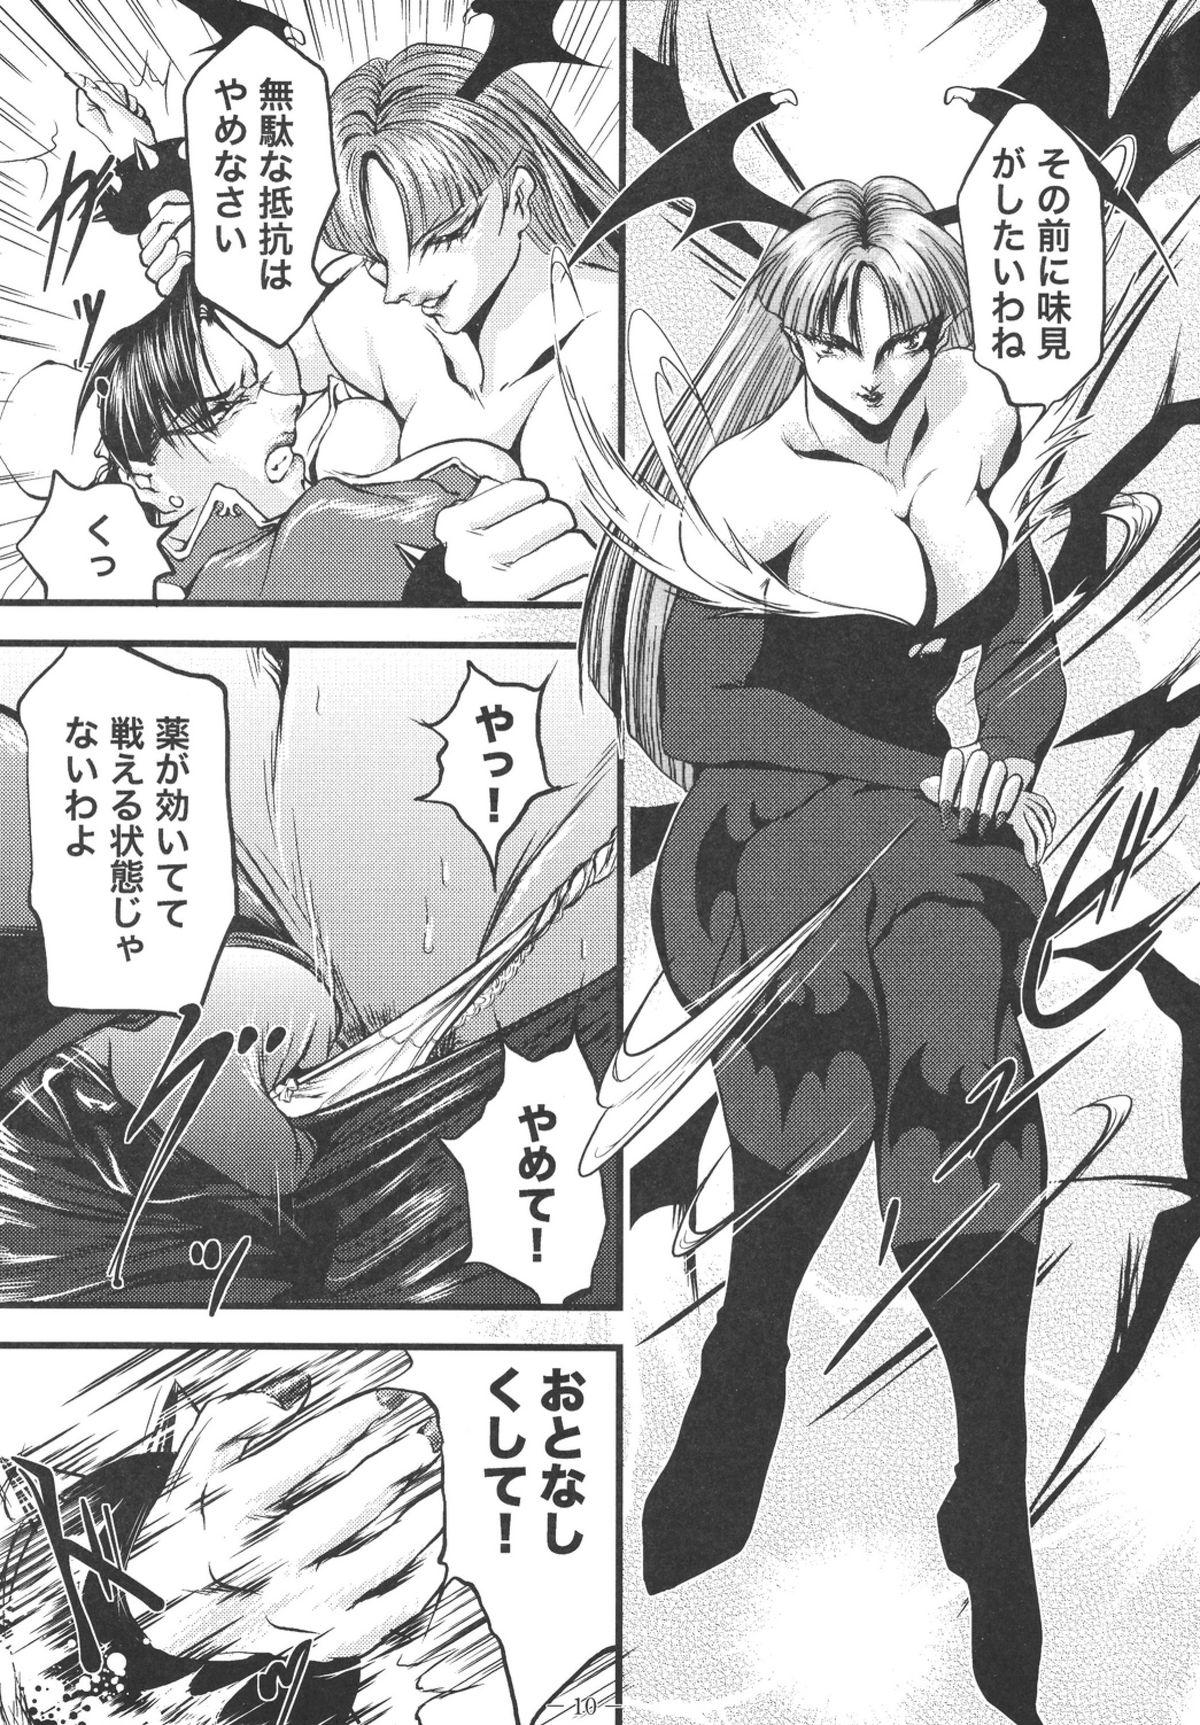 Sucks Ingoku no Ikusa Megami Battle Queen - Street fighter Darkstalkers Gorda - Page 10